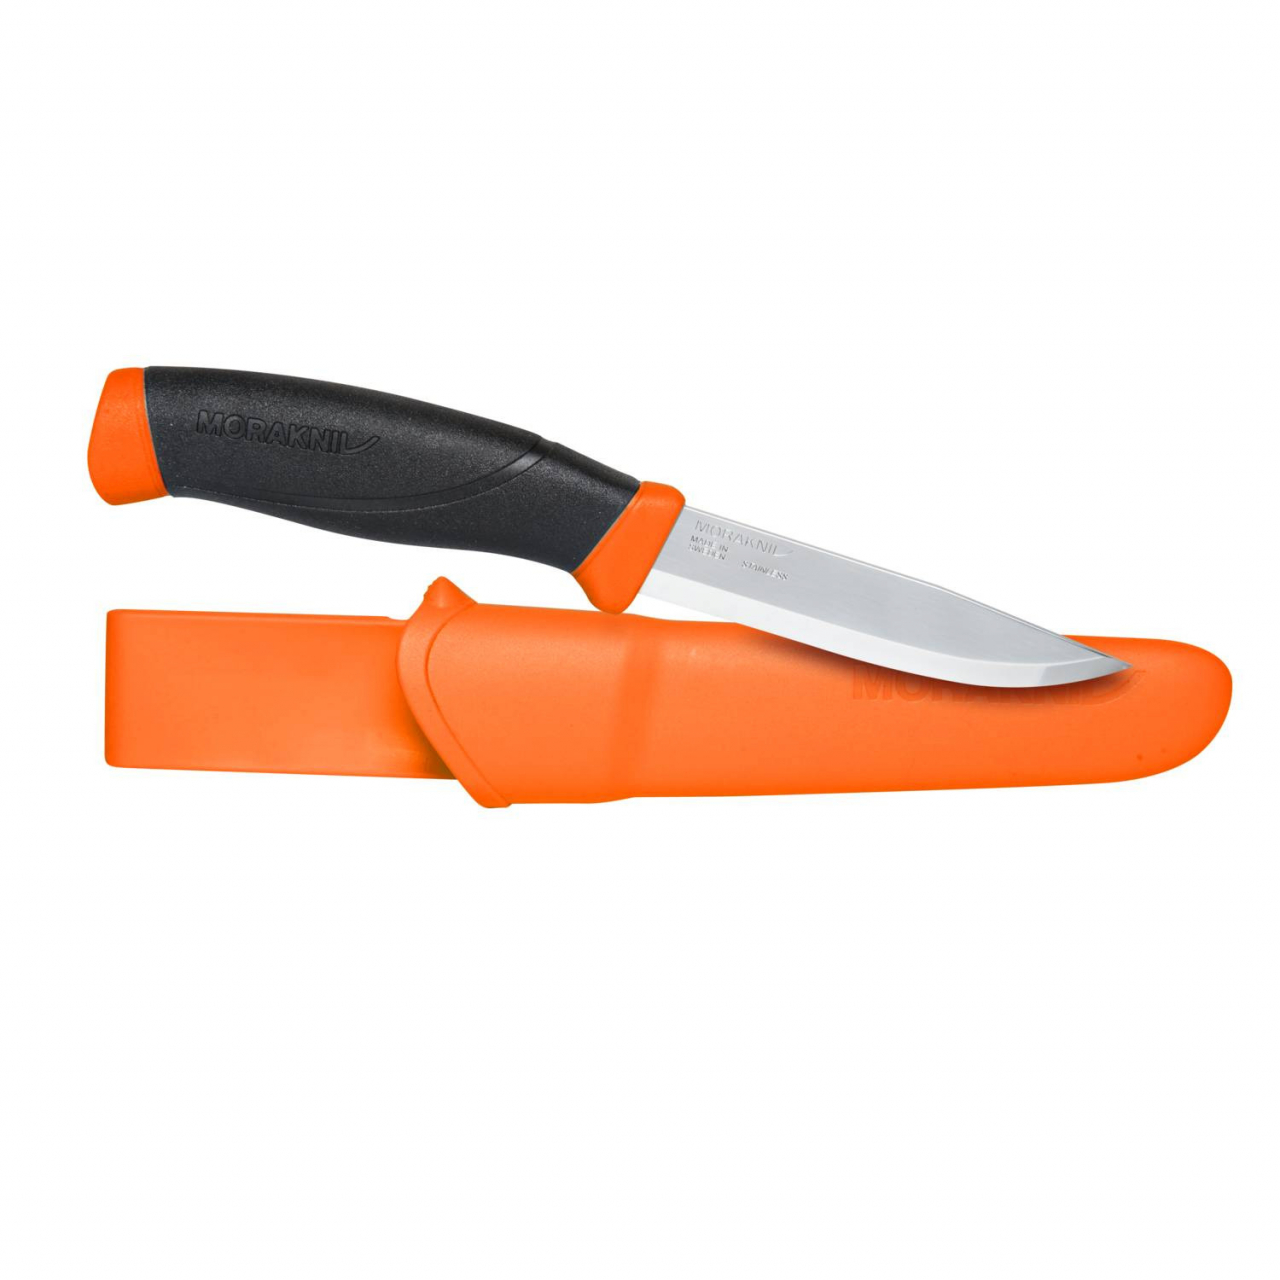 Pracovní nůž Morakniv Companion F - oranžový (18+)